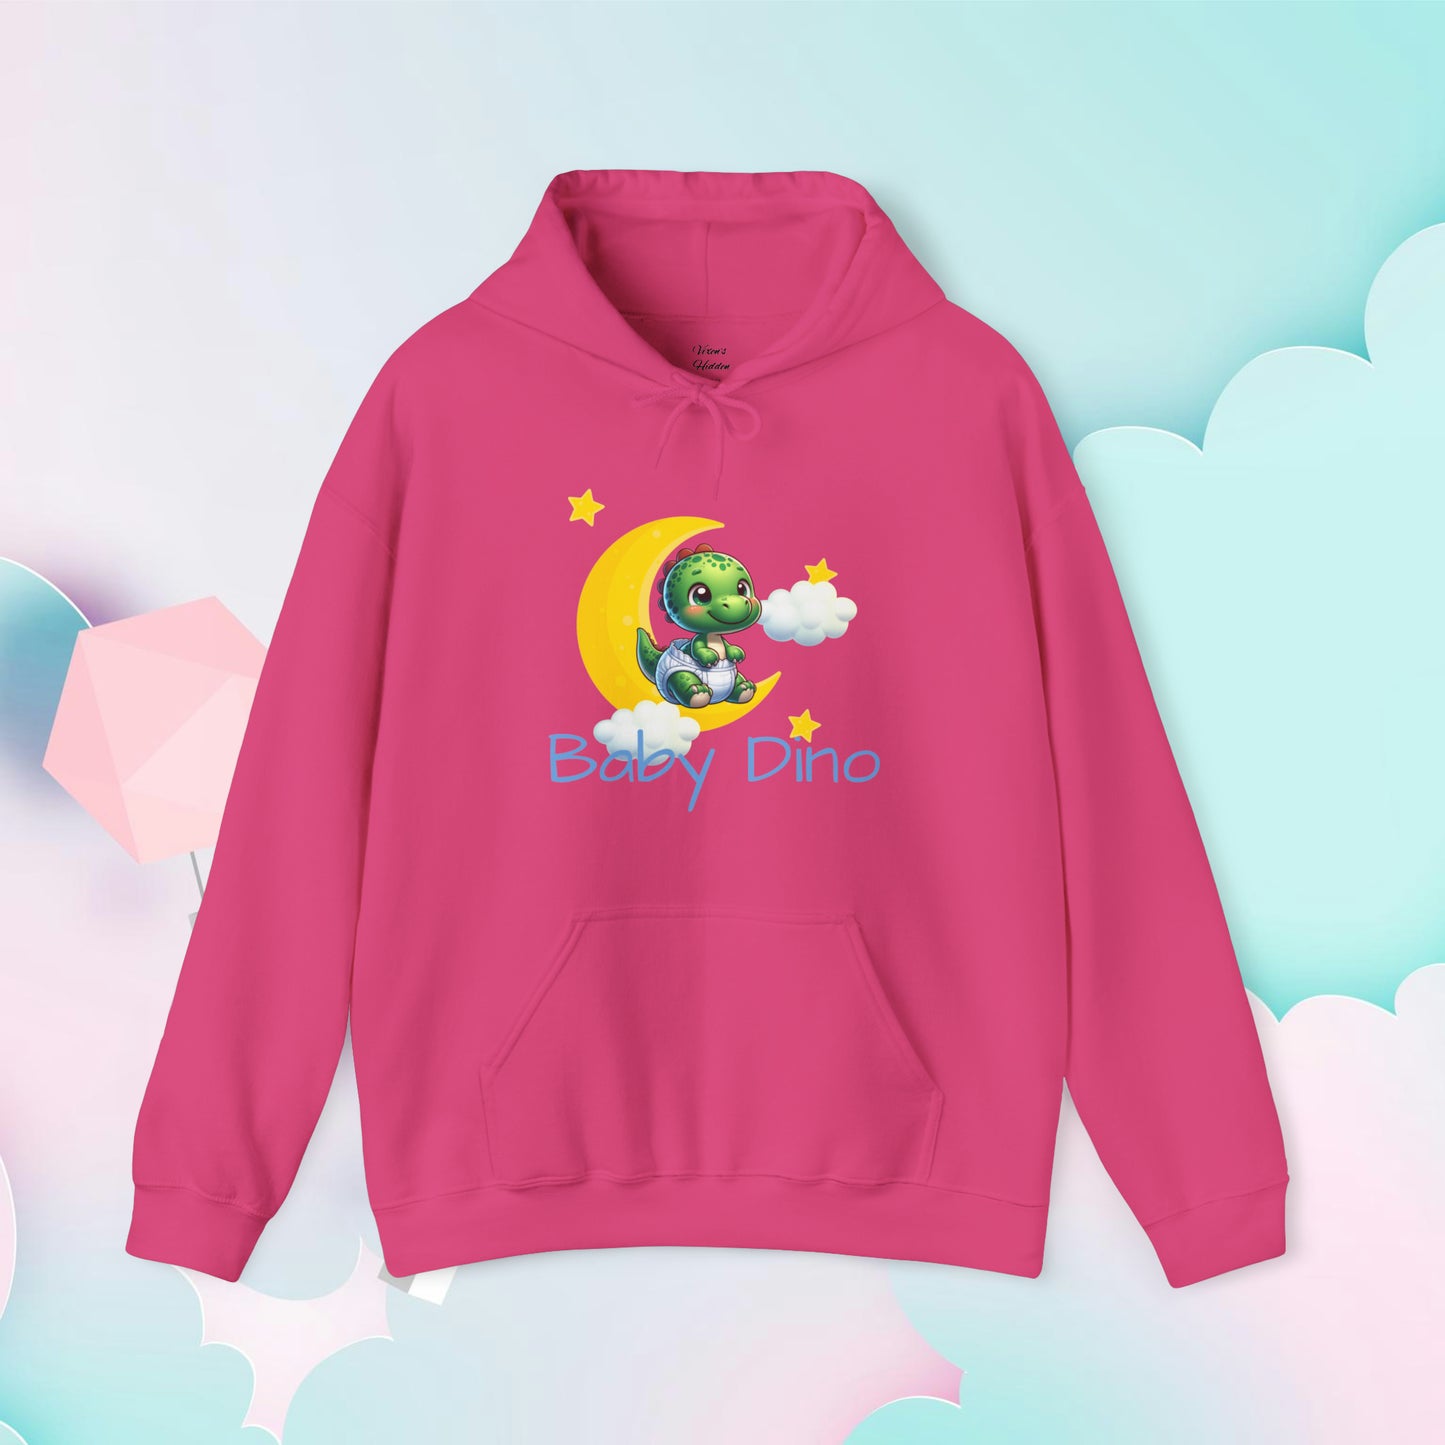 Baby Dino Hoodie - Unisex Hooded Sweatshirt